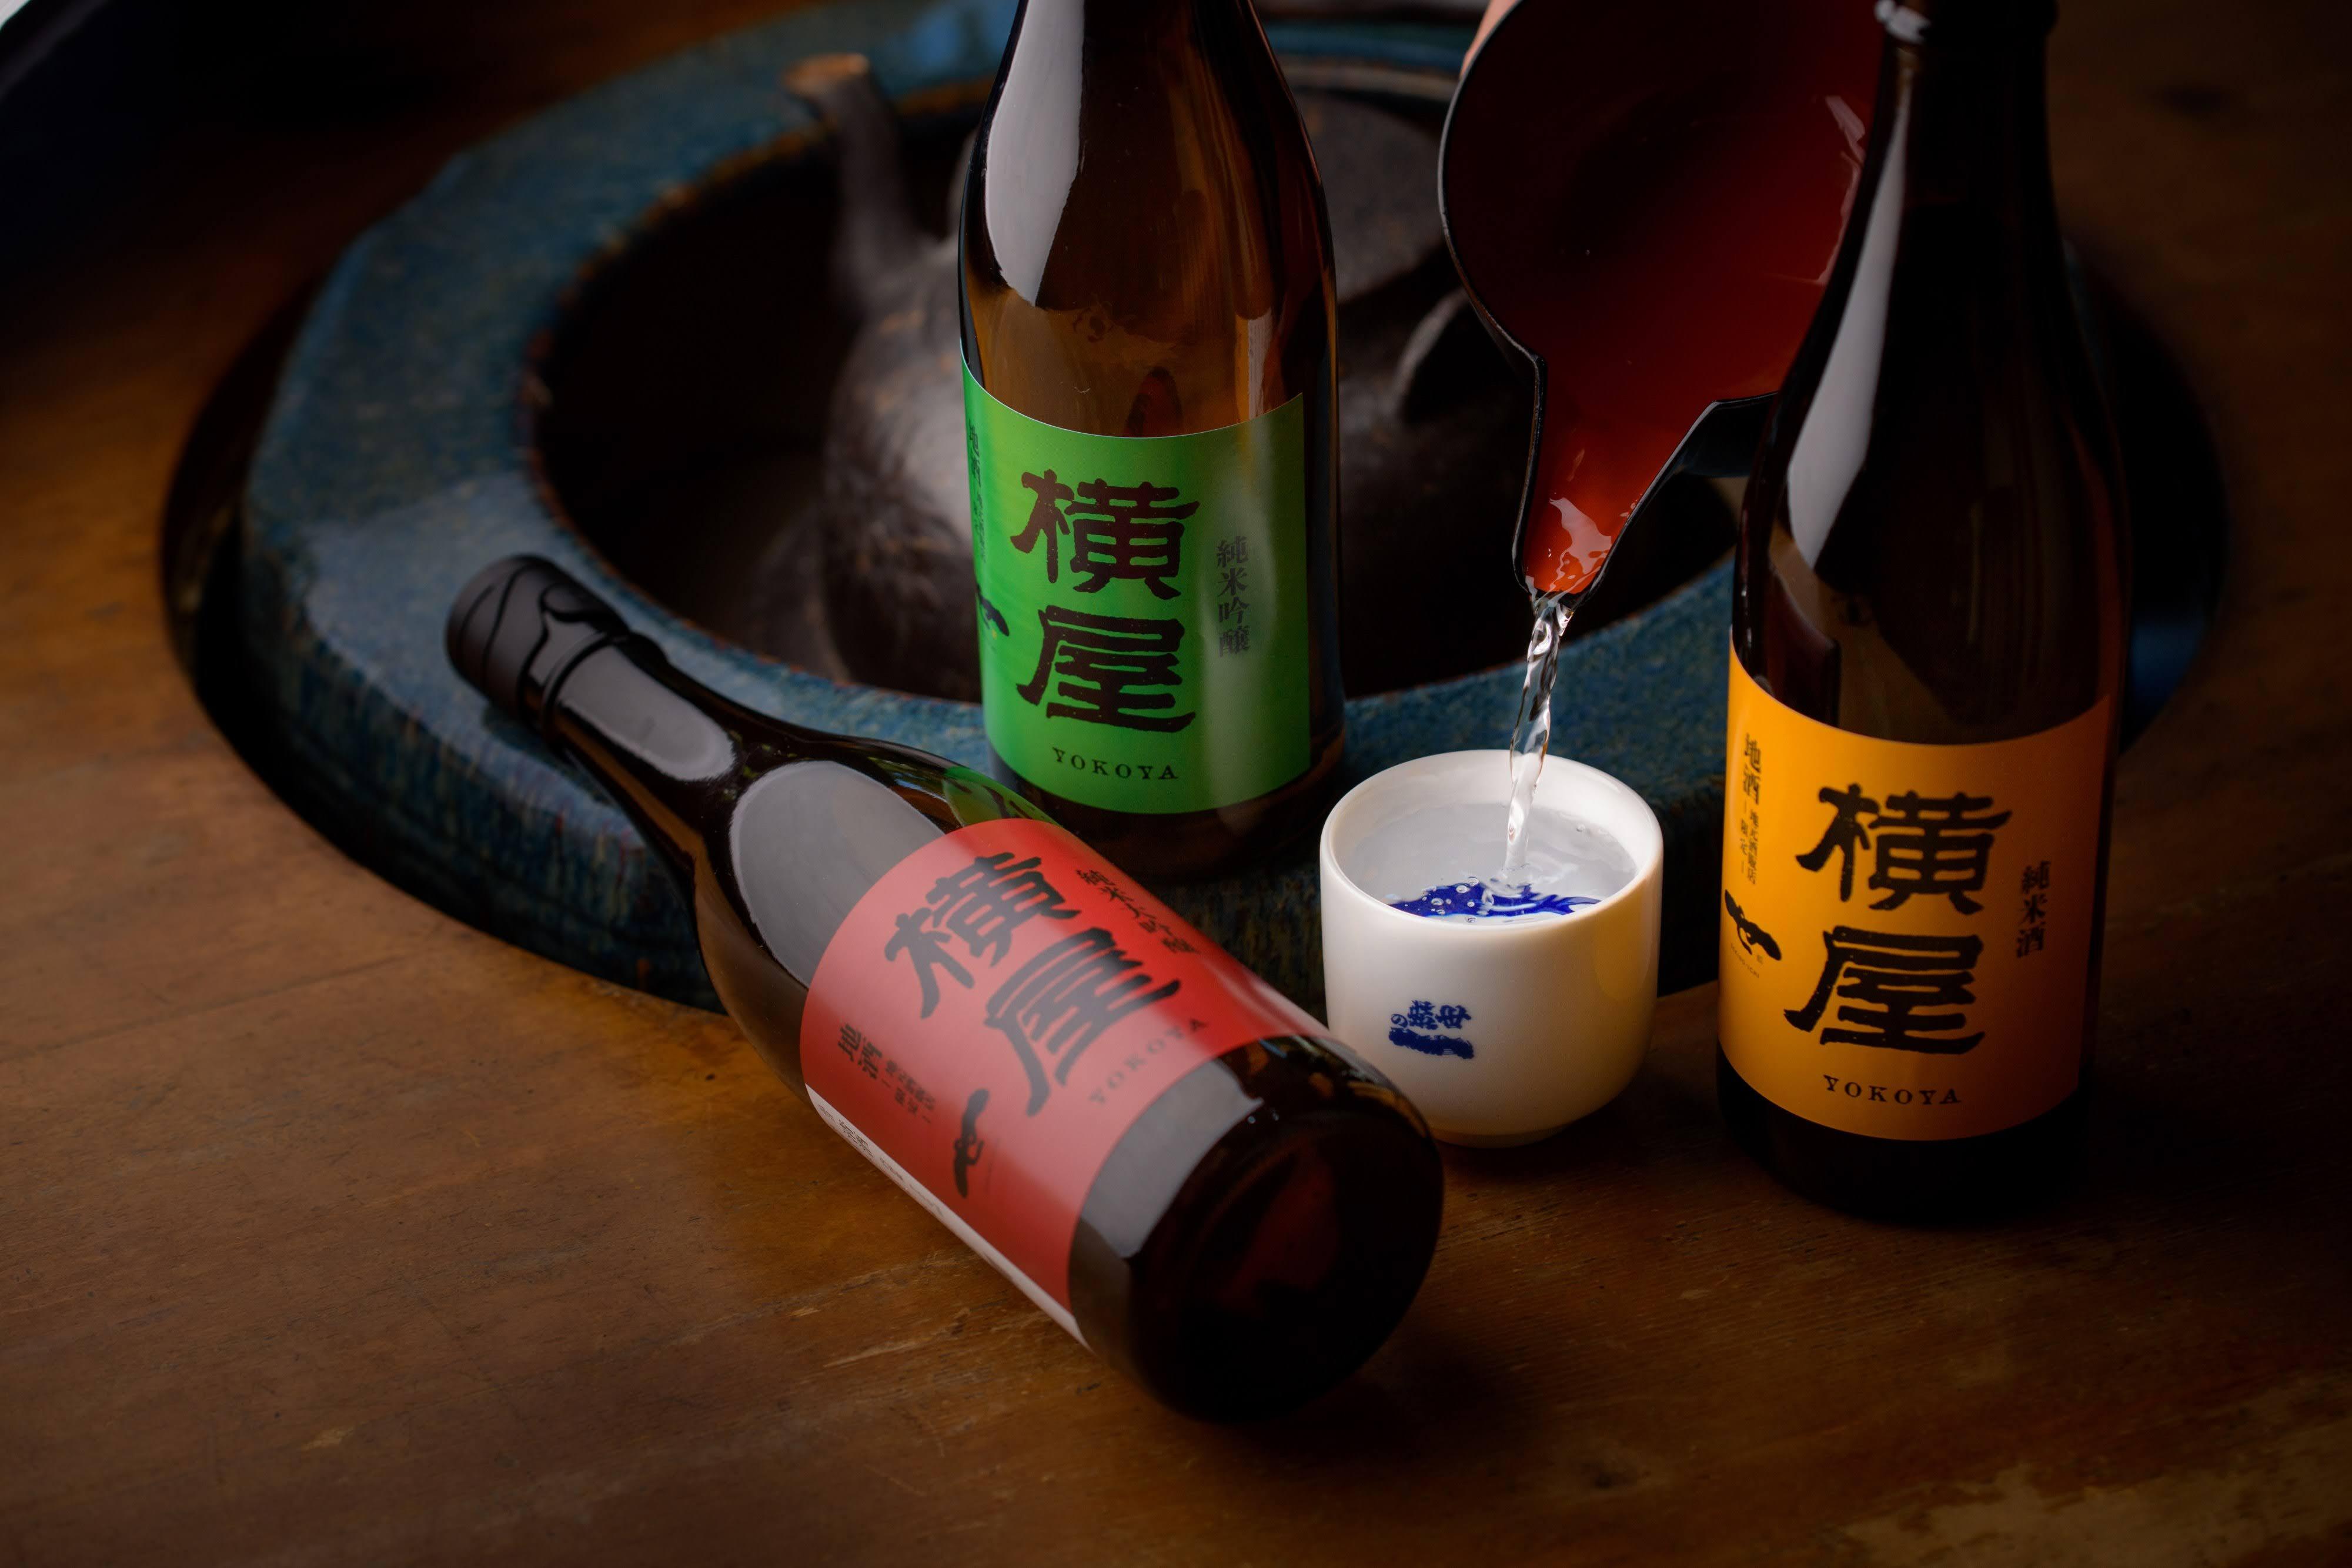 岩手県一関市の世嬉の一酒造が40年ぶりの酒蔵蔵復活！
40年ぶりに地酒を販売します。